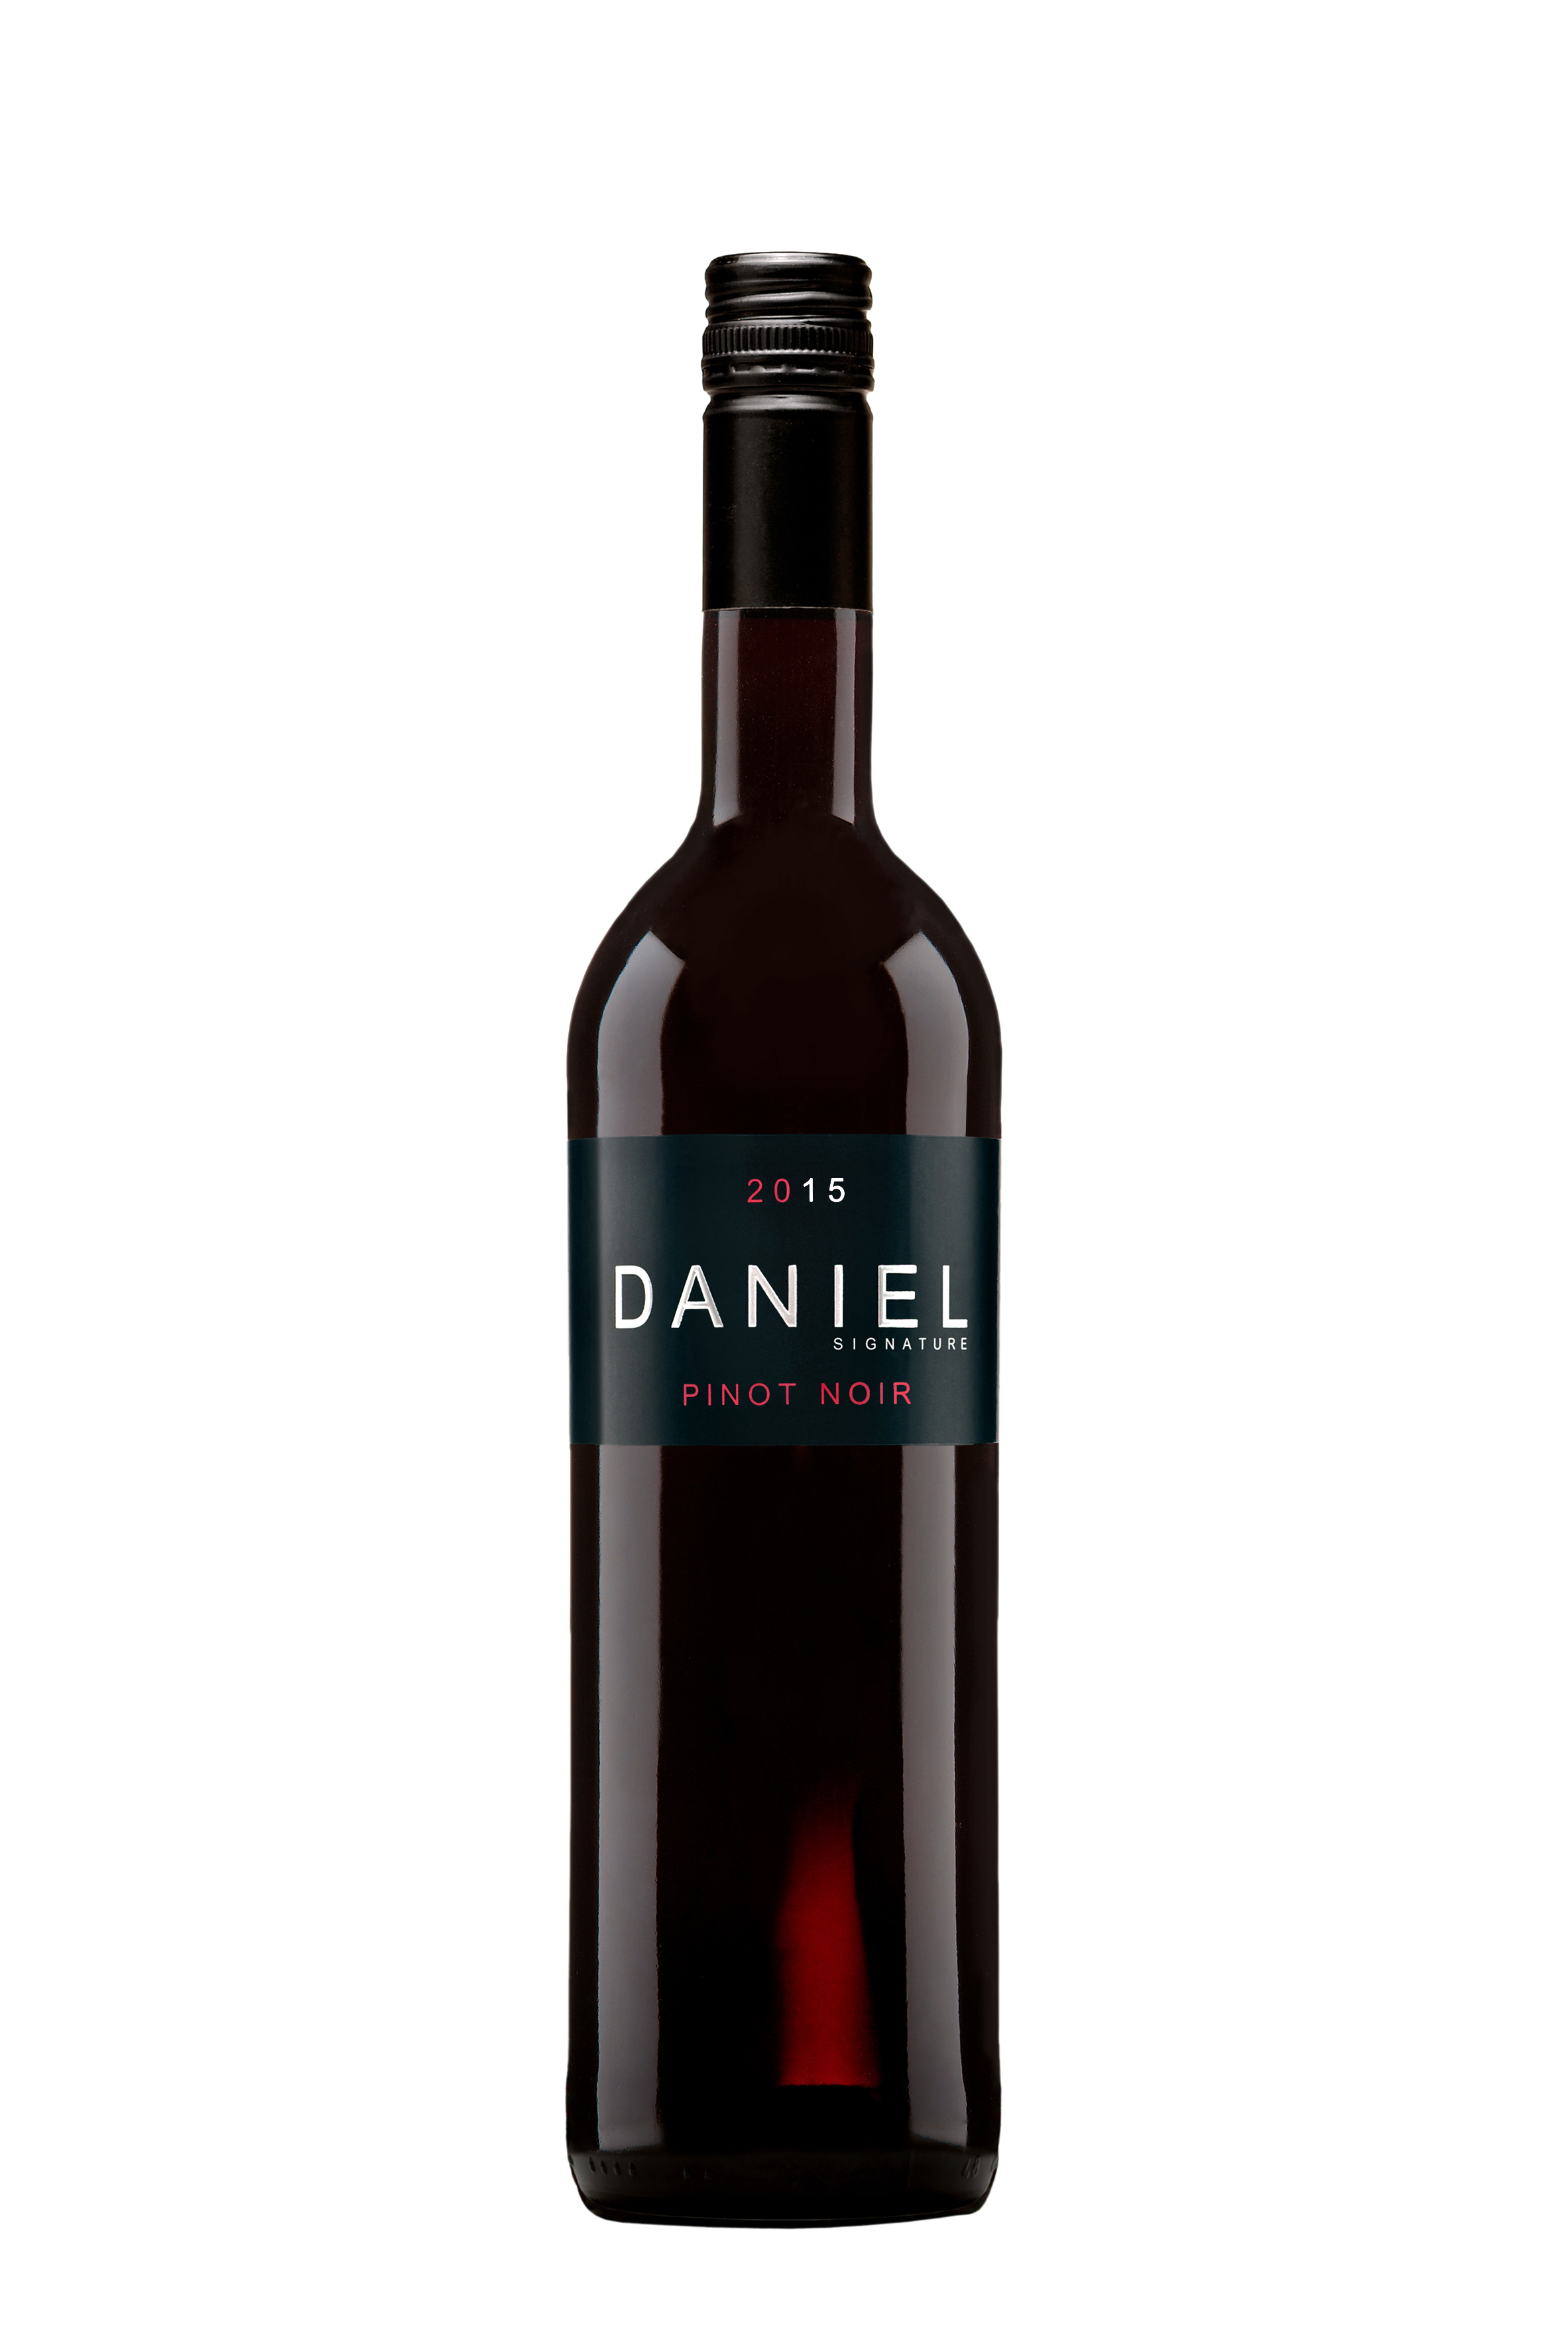 2019 Daniel Pinot Noir Signature Rotwein trocken